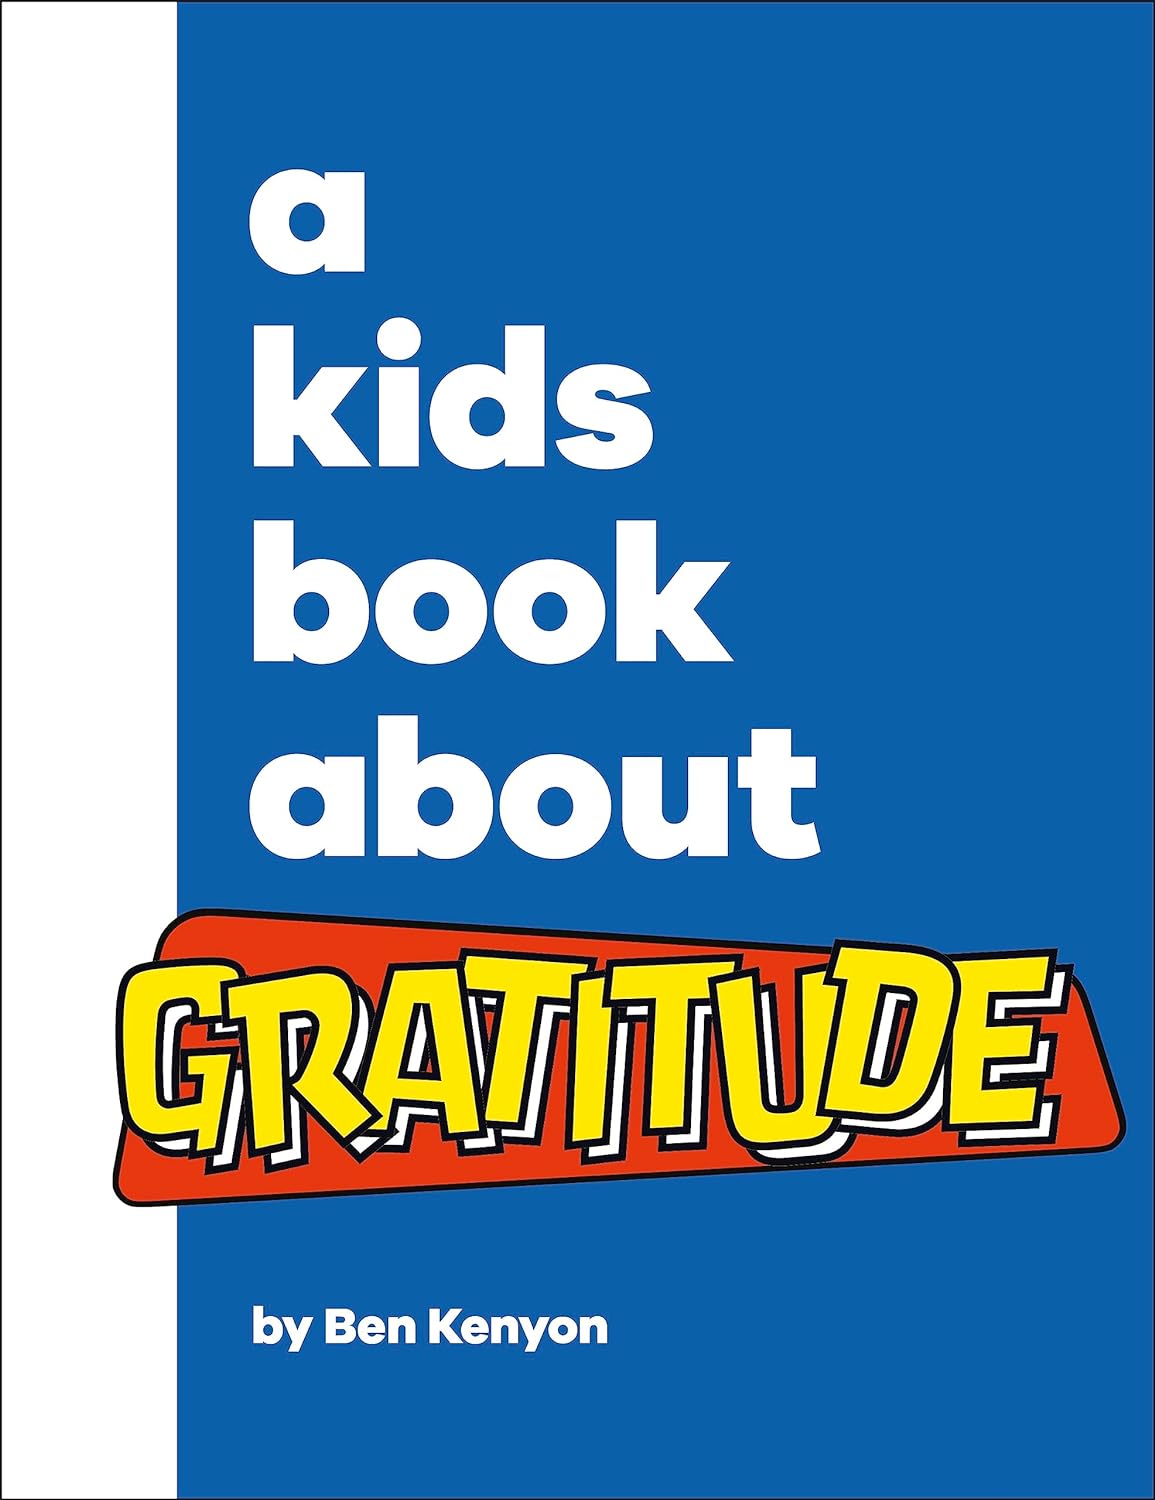 DK A Kids Book About Gratitude